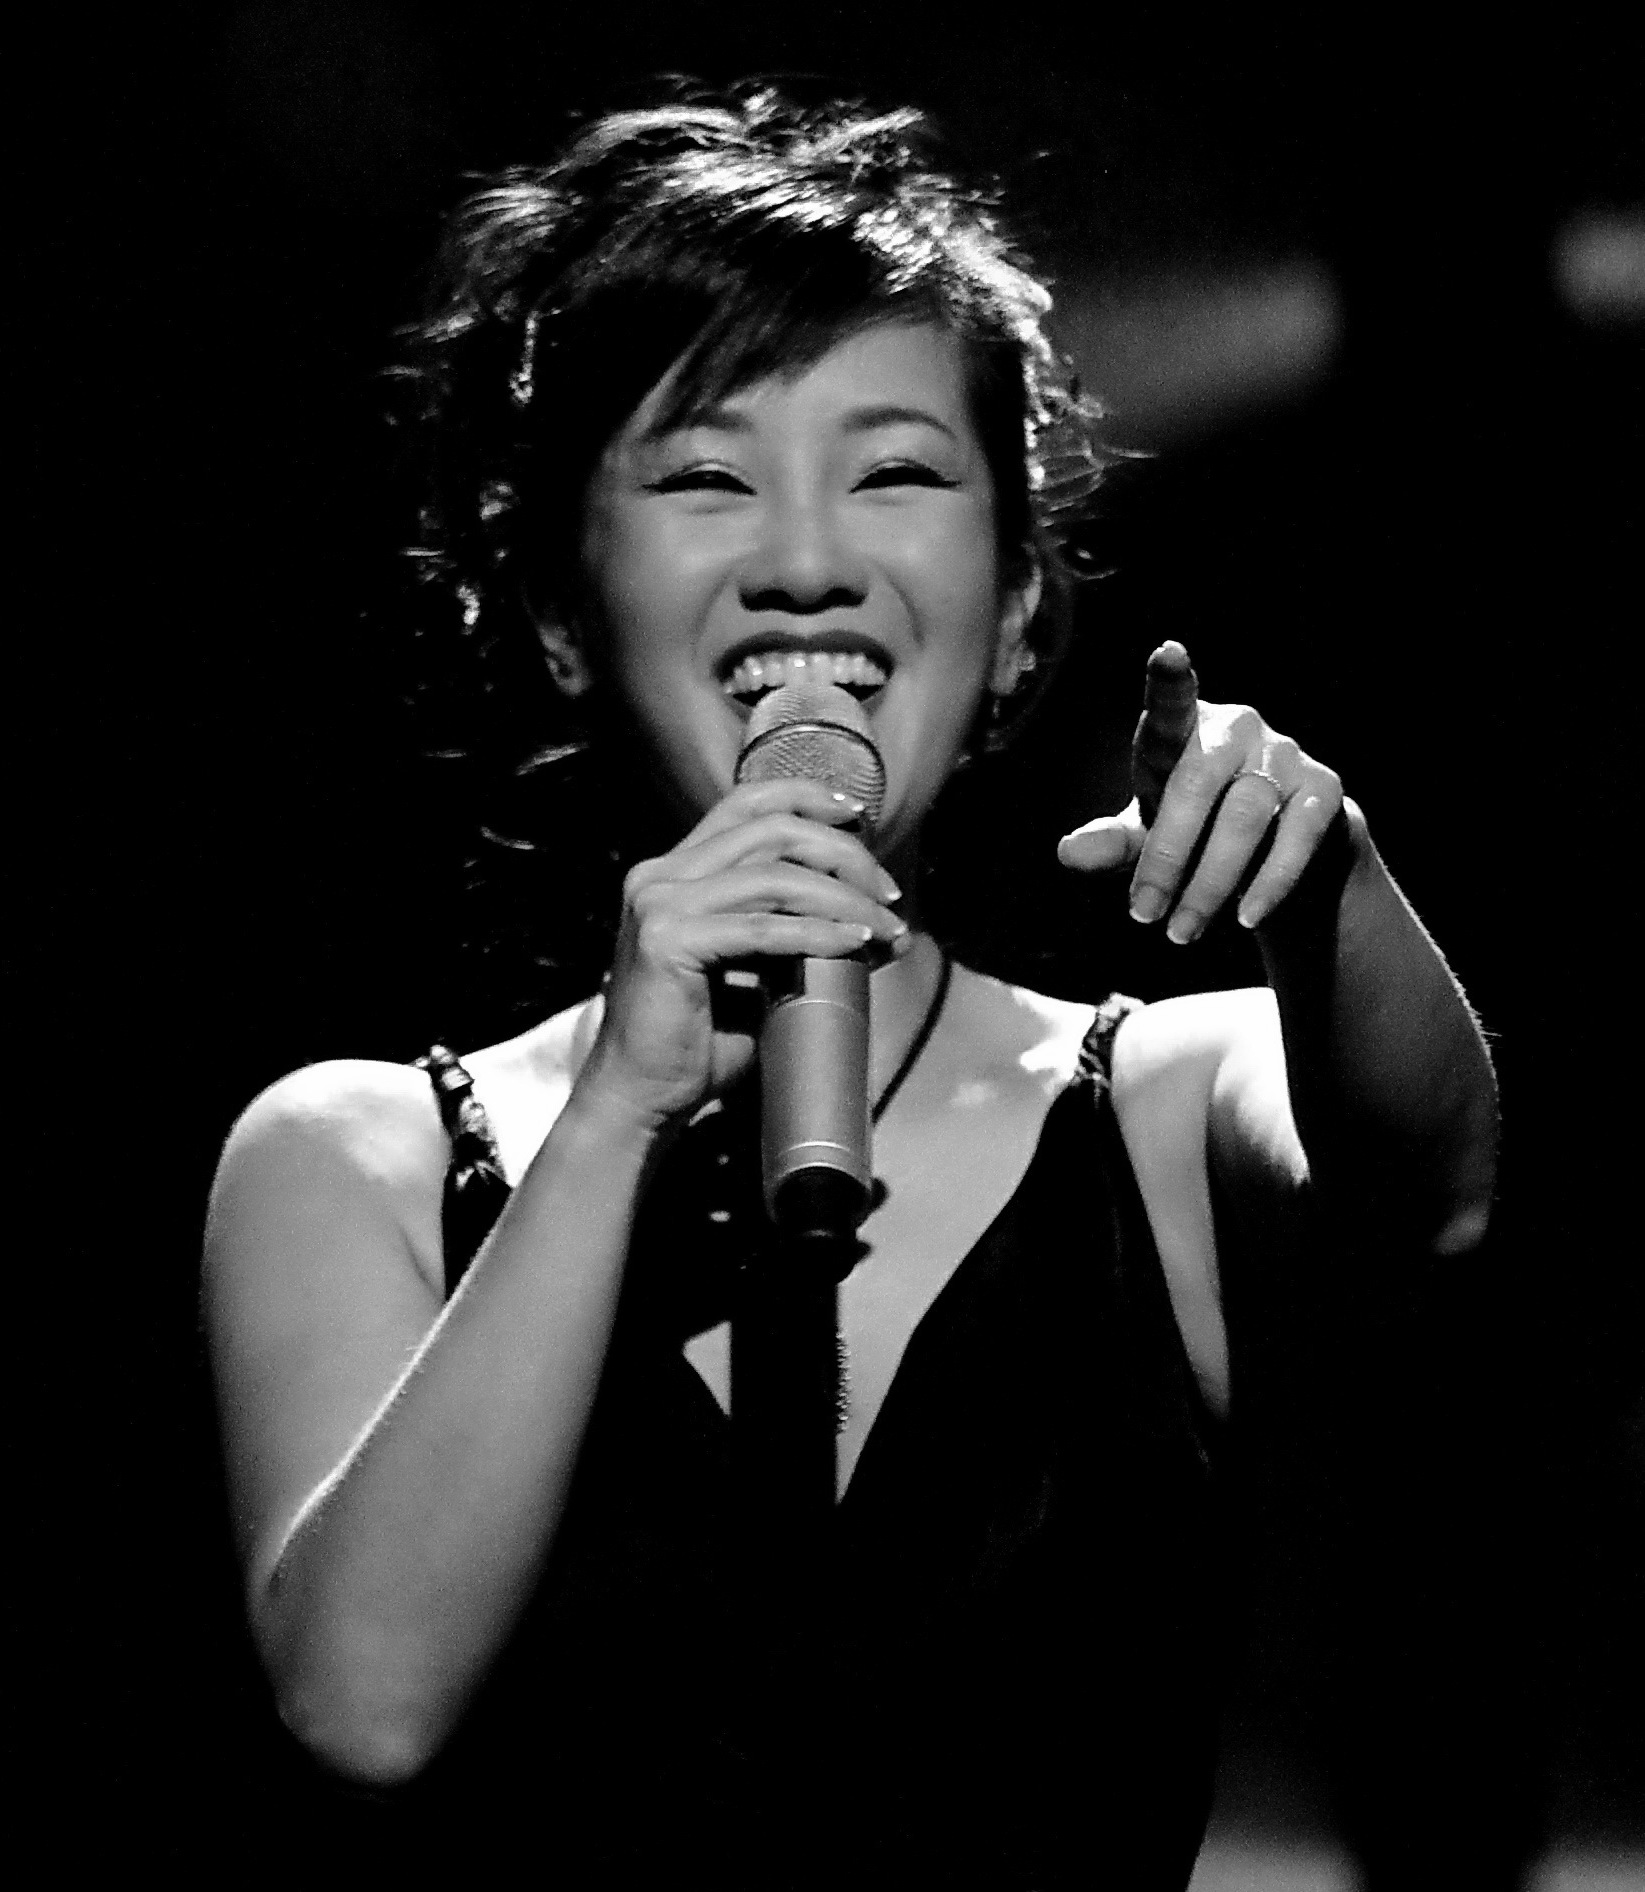 Hồng Nhung: Với giọng hát trong trẻo và tình cảm, Hồng Nhung đã trở thành một huyền thoại trong làng nhạc Việt Nam. Hãy thưởng thức hình ảnh của cô ấy để cảm nhận được sức sống trong âm nhạc.